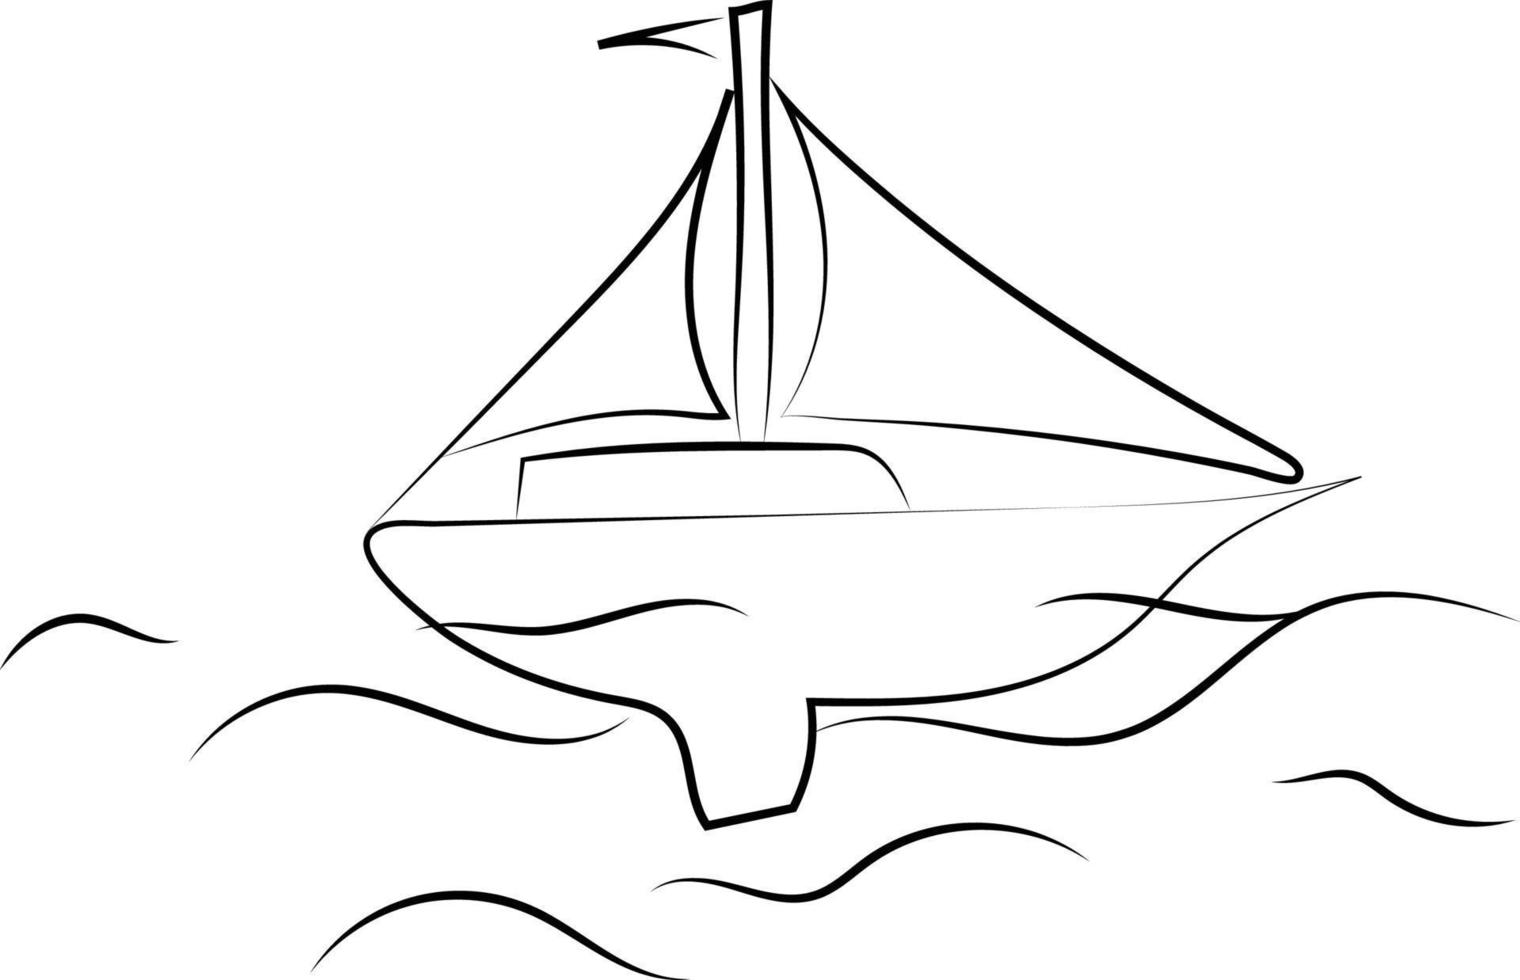 båt på hav teckning, illustration, vektor på vit bakgrund.